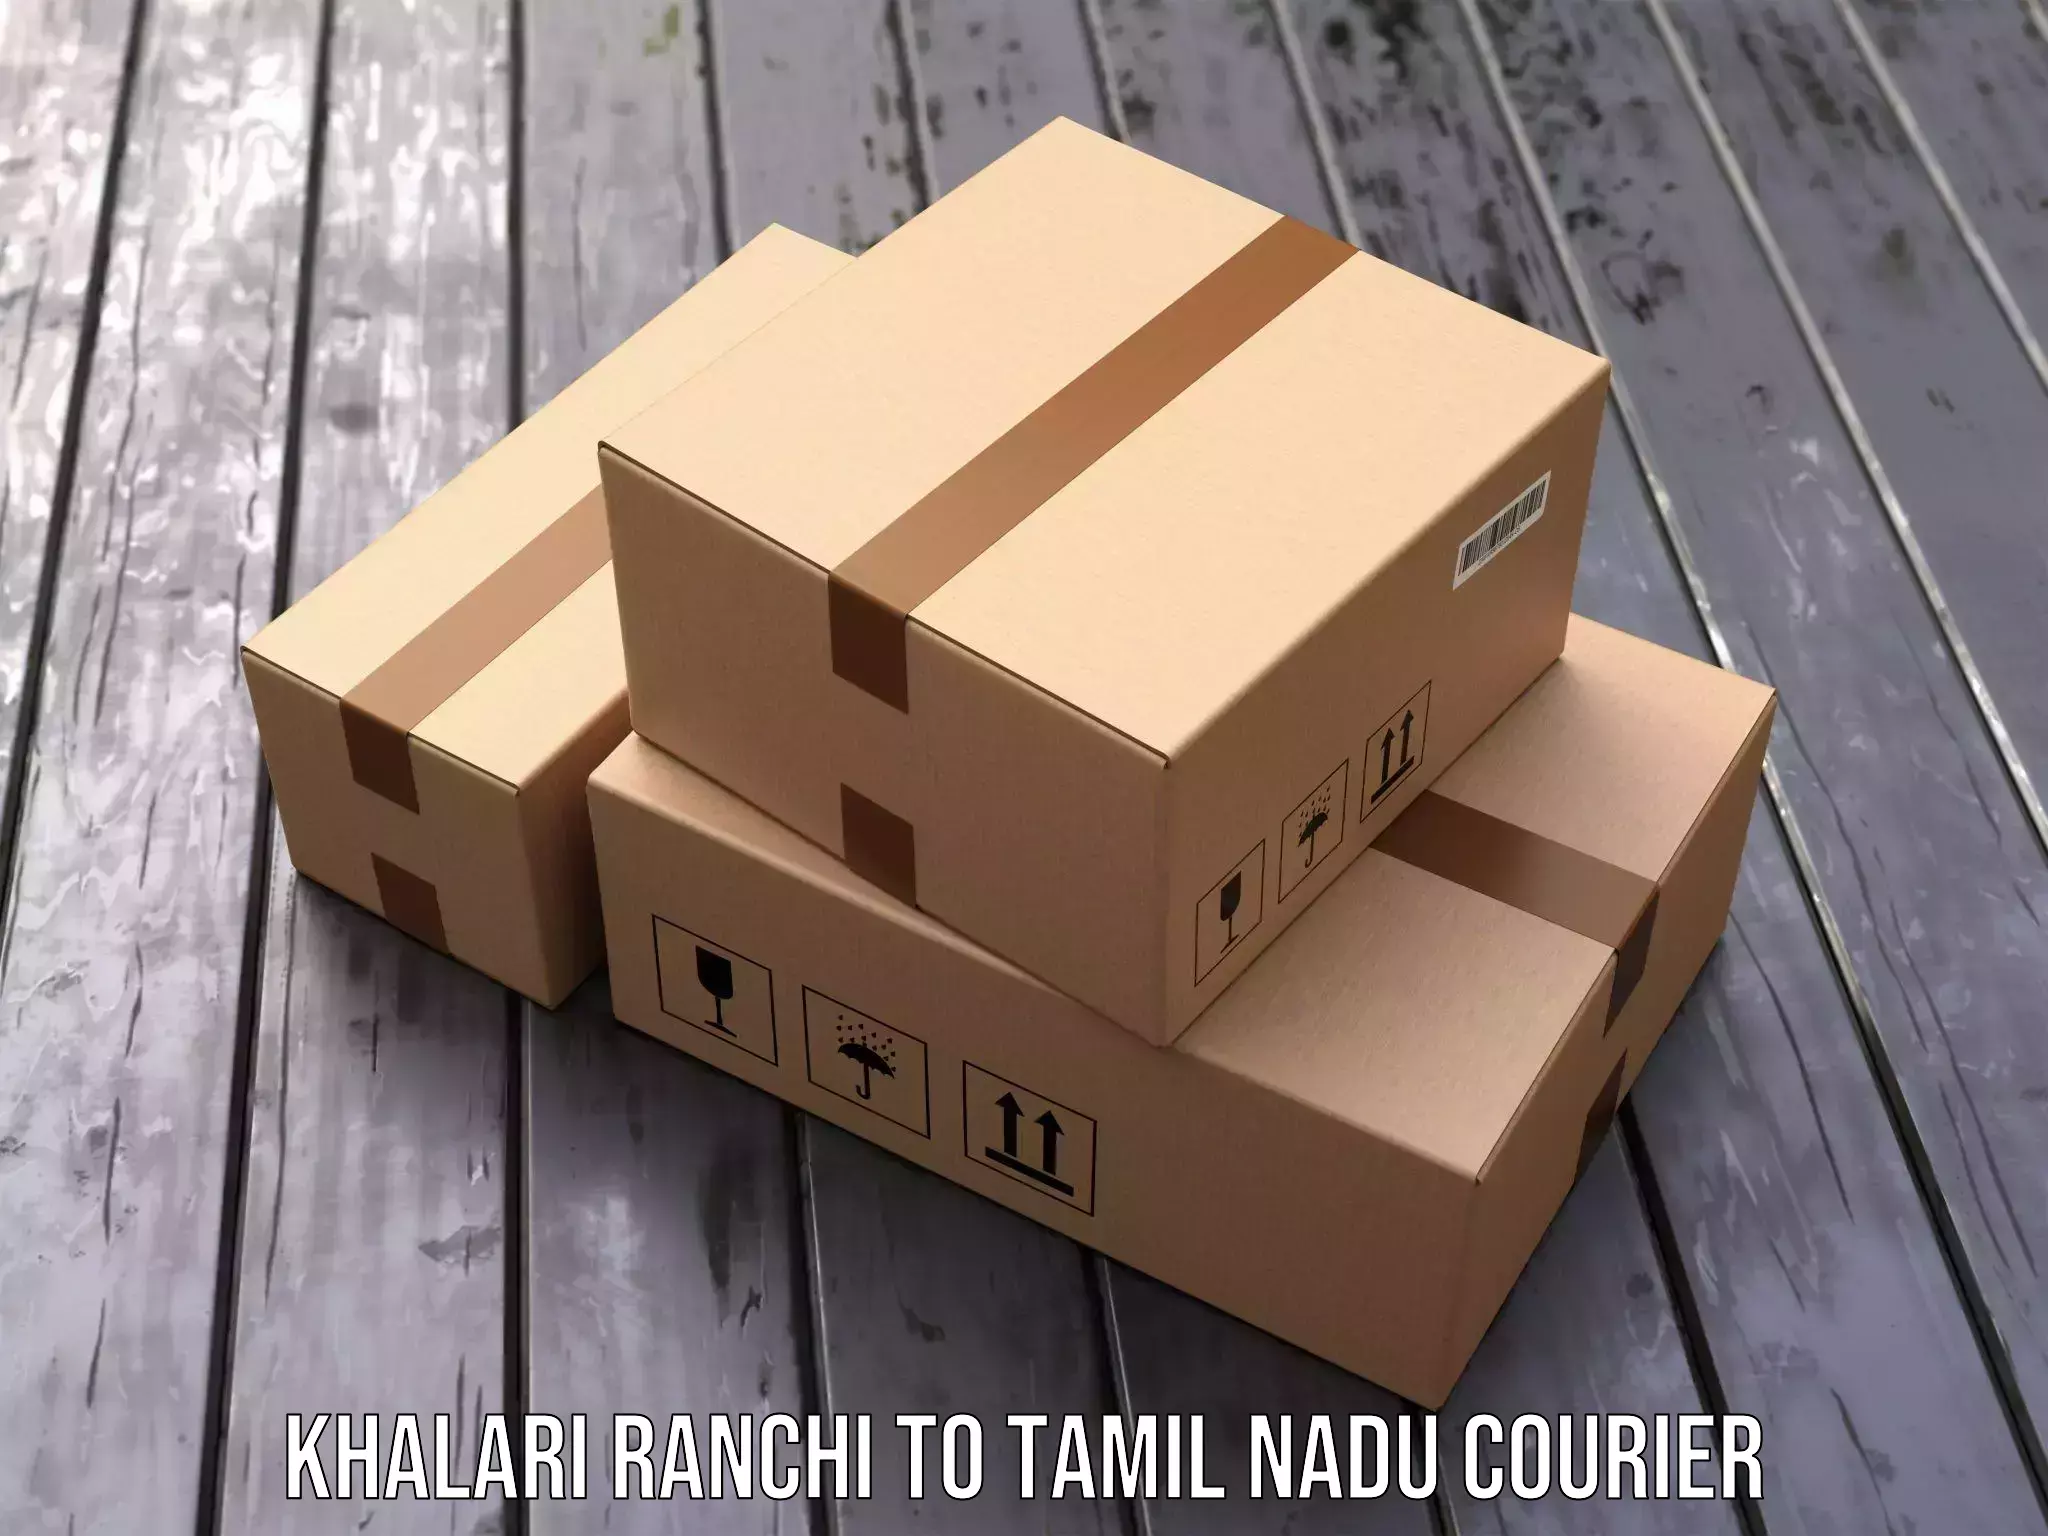 Courier service efficiency Khalari Ranchi to Thuckalay